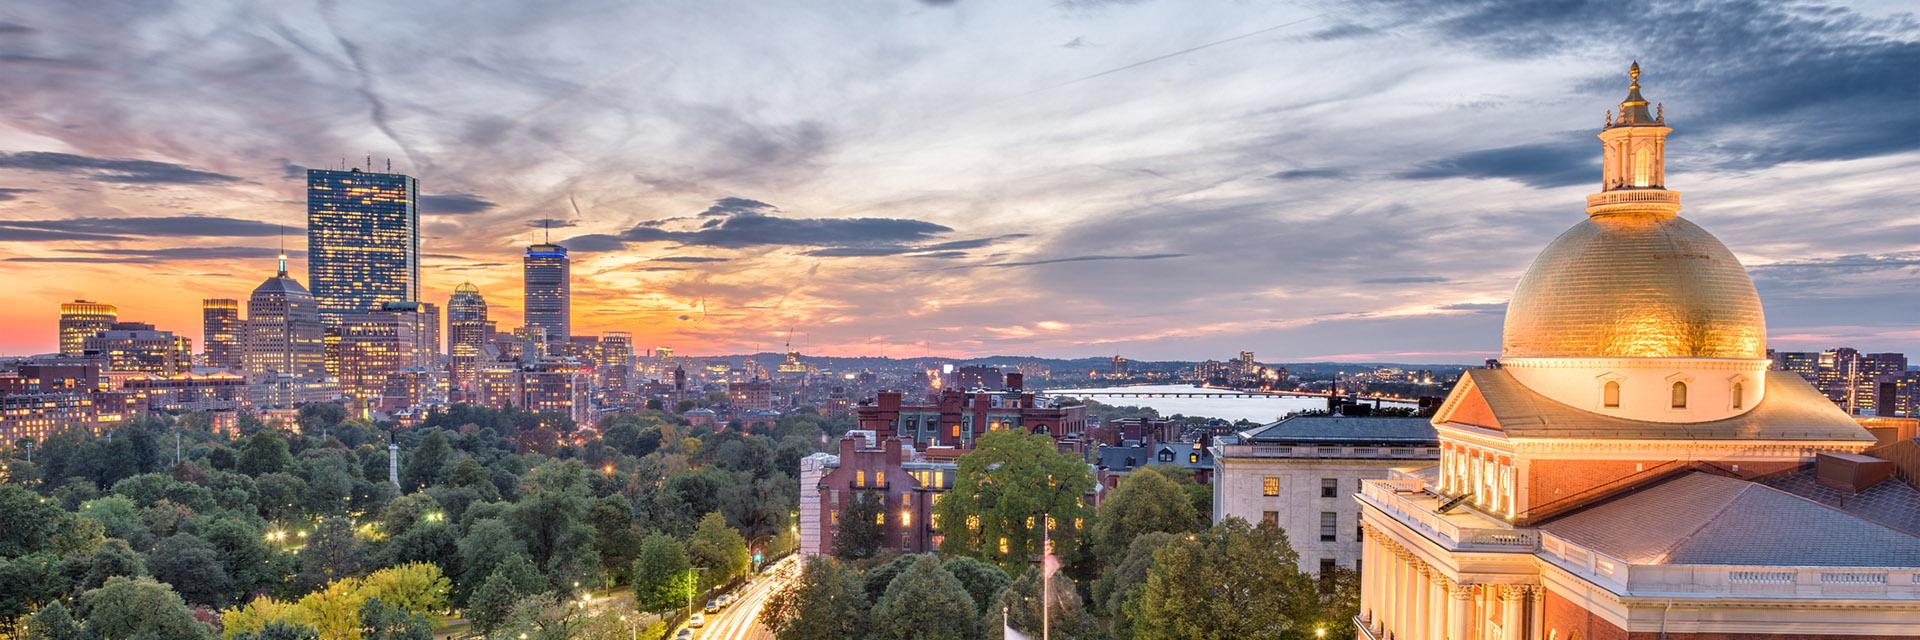 Boston city view